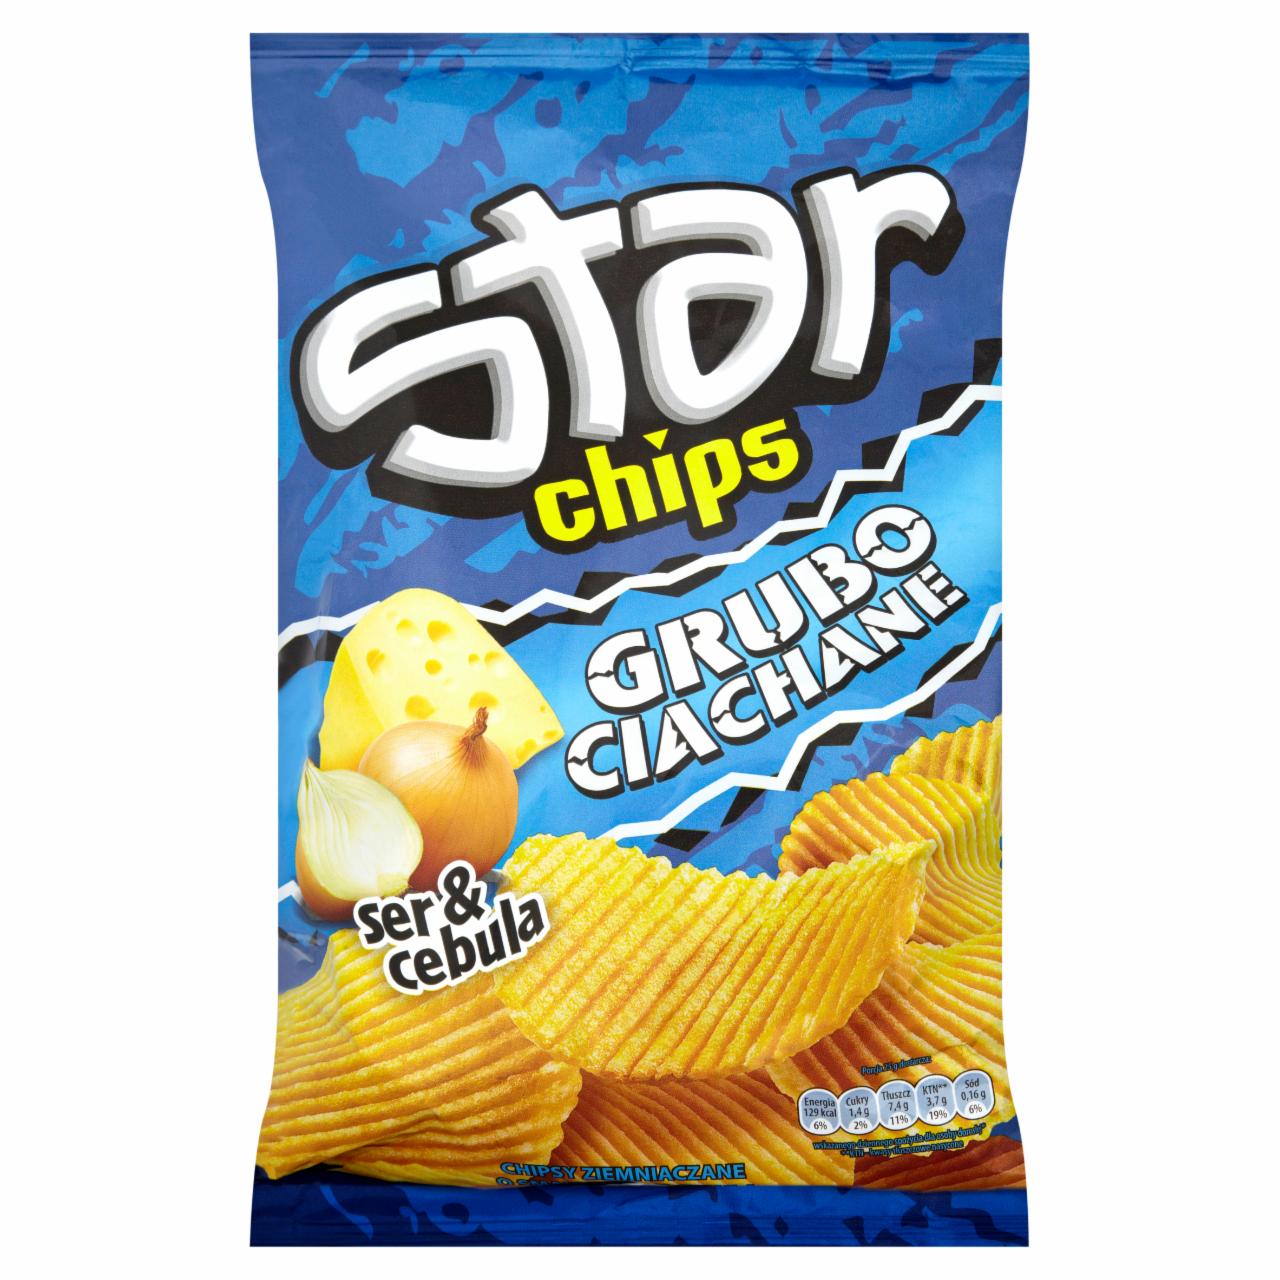 Zdjęcia - Star Chips Grubo Ciachane Chipsy ziemniaczane o smaku sera z cebulą 150 g